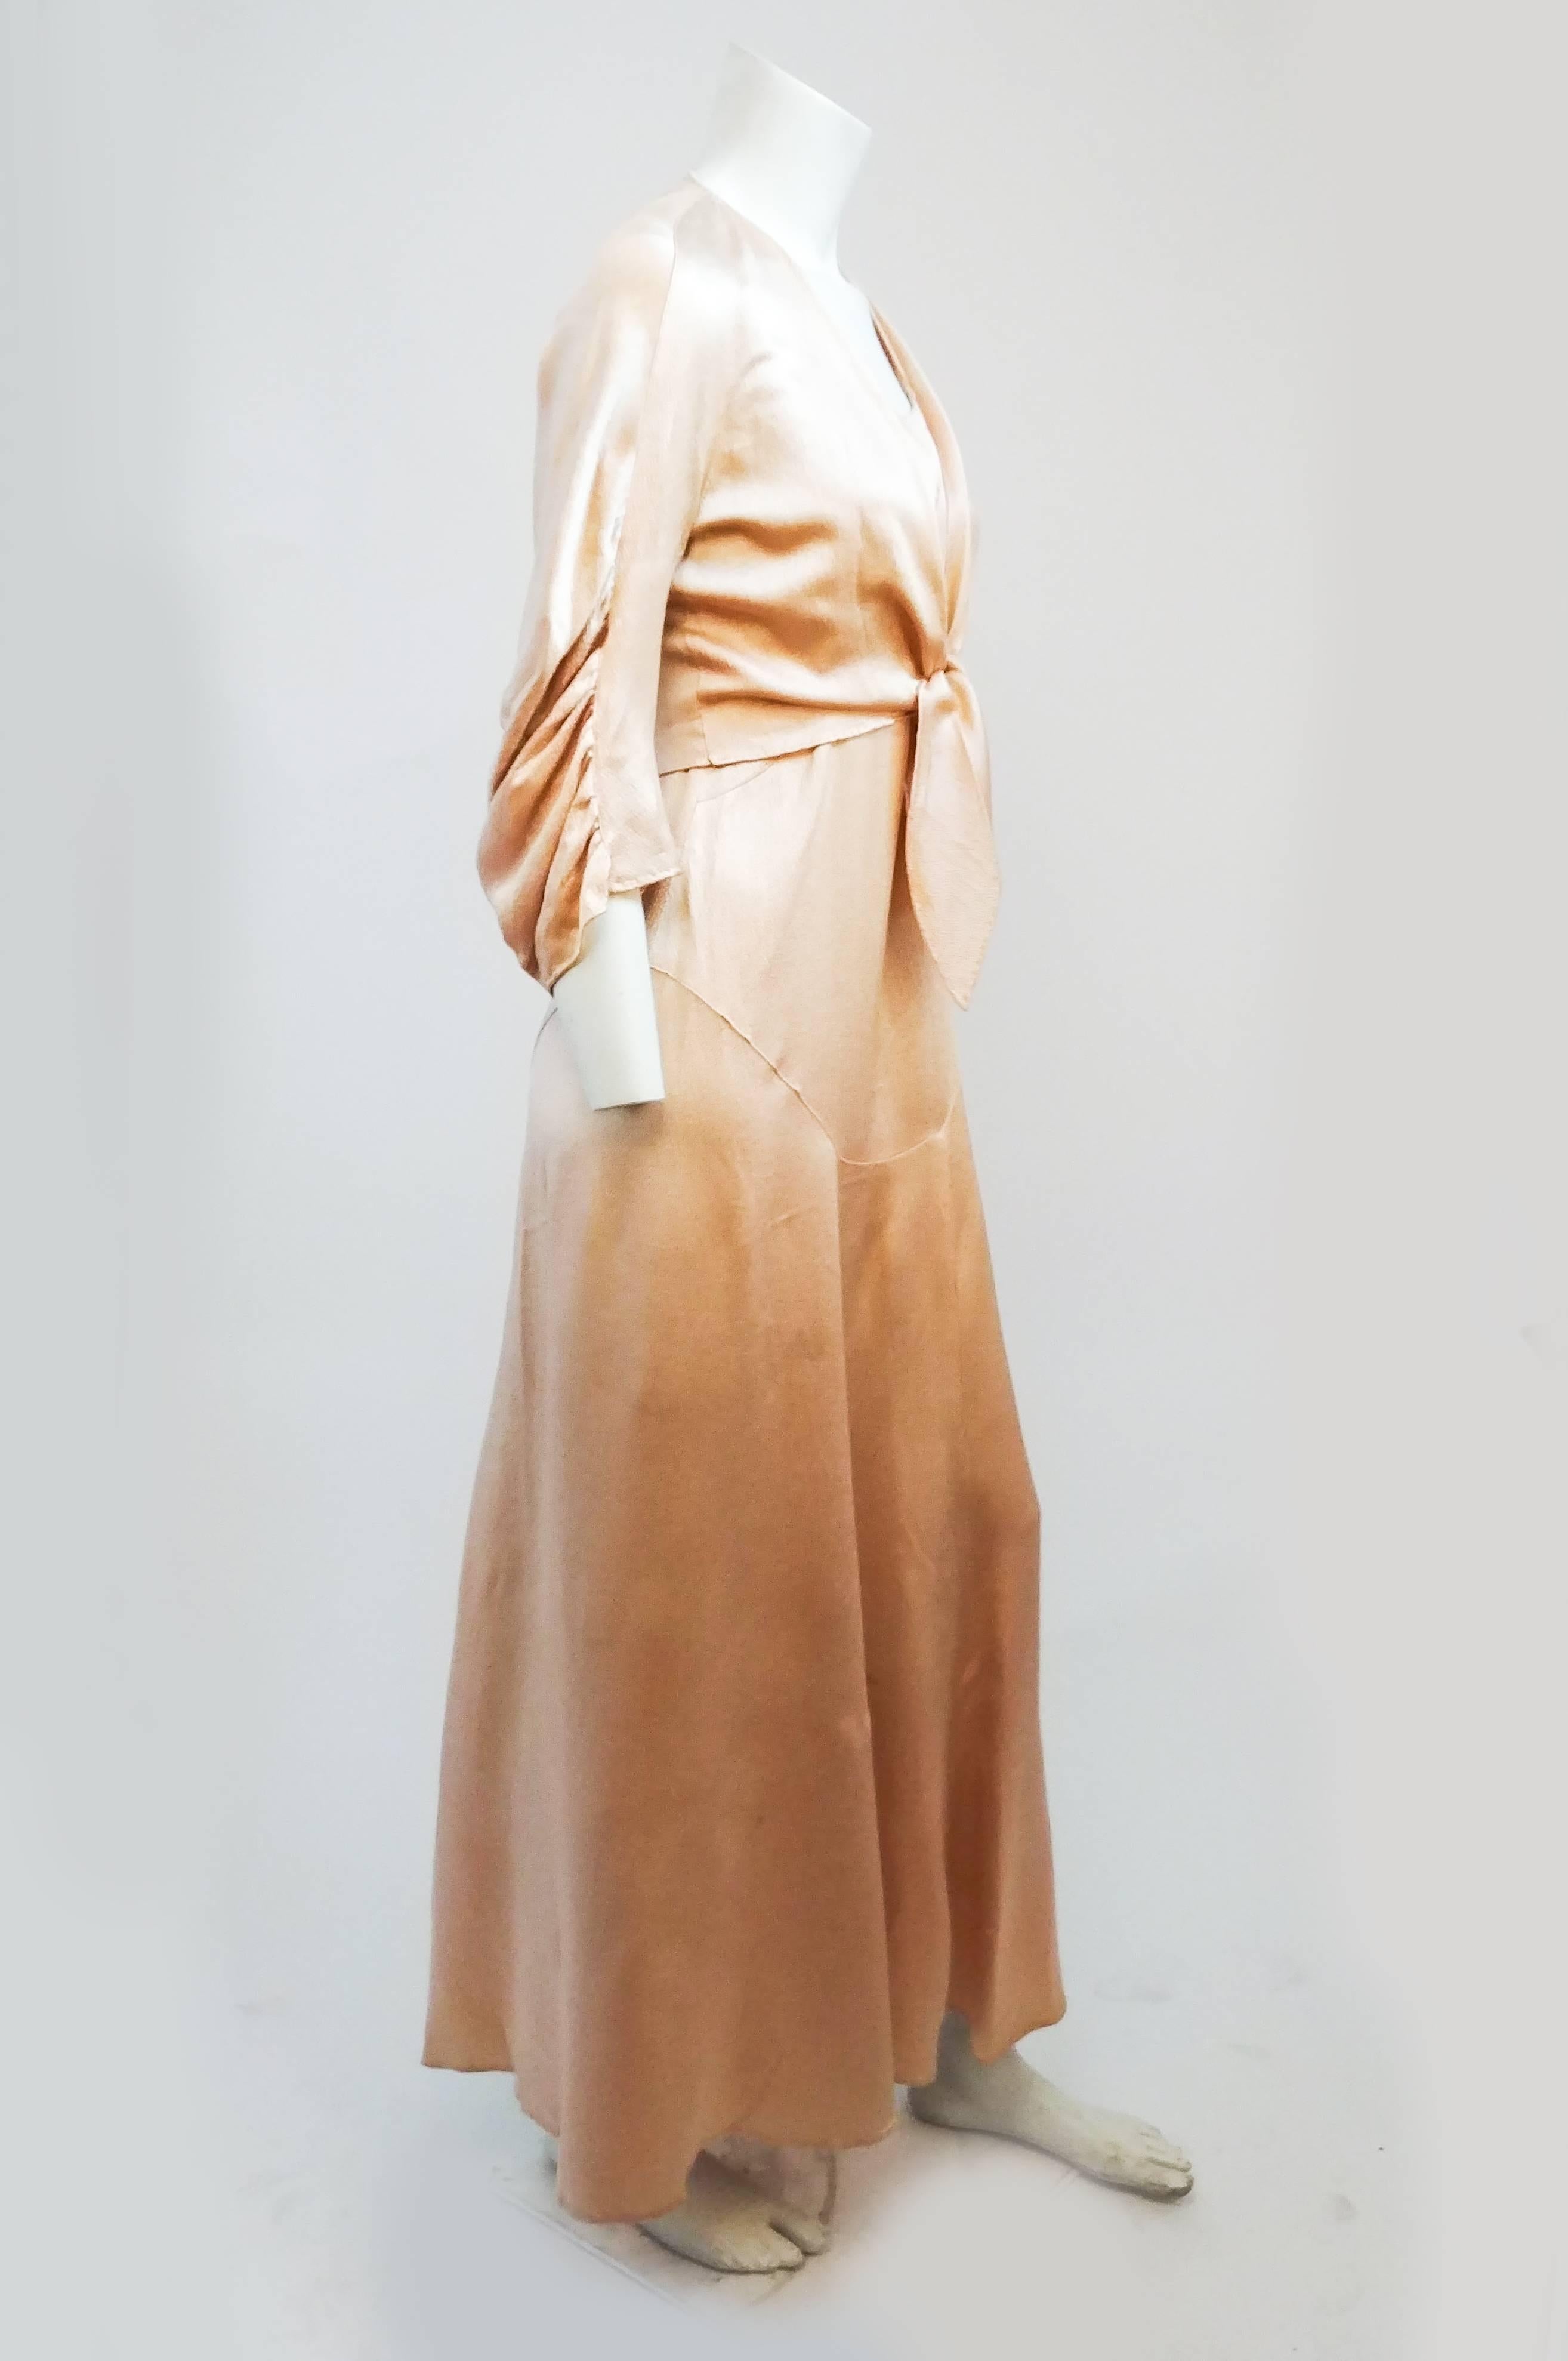 1930er Jahre Rosa gehämmert Seide Kleid & Bolero Set. Schräg geschnittenes, durchgehendes Kleid ohne Verschlüsse, das über den Kopf gezogen werden kann. Geflochtene Träger mit gekreuztem Rücken. Bolerojäckchen in Viertellänge mit Bindebändern auf